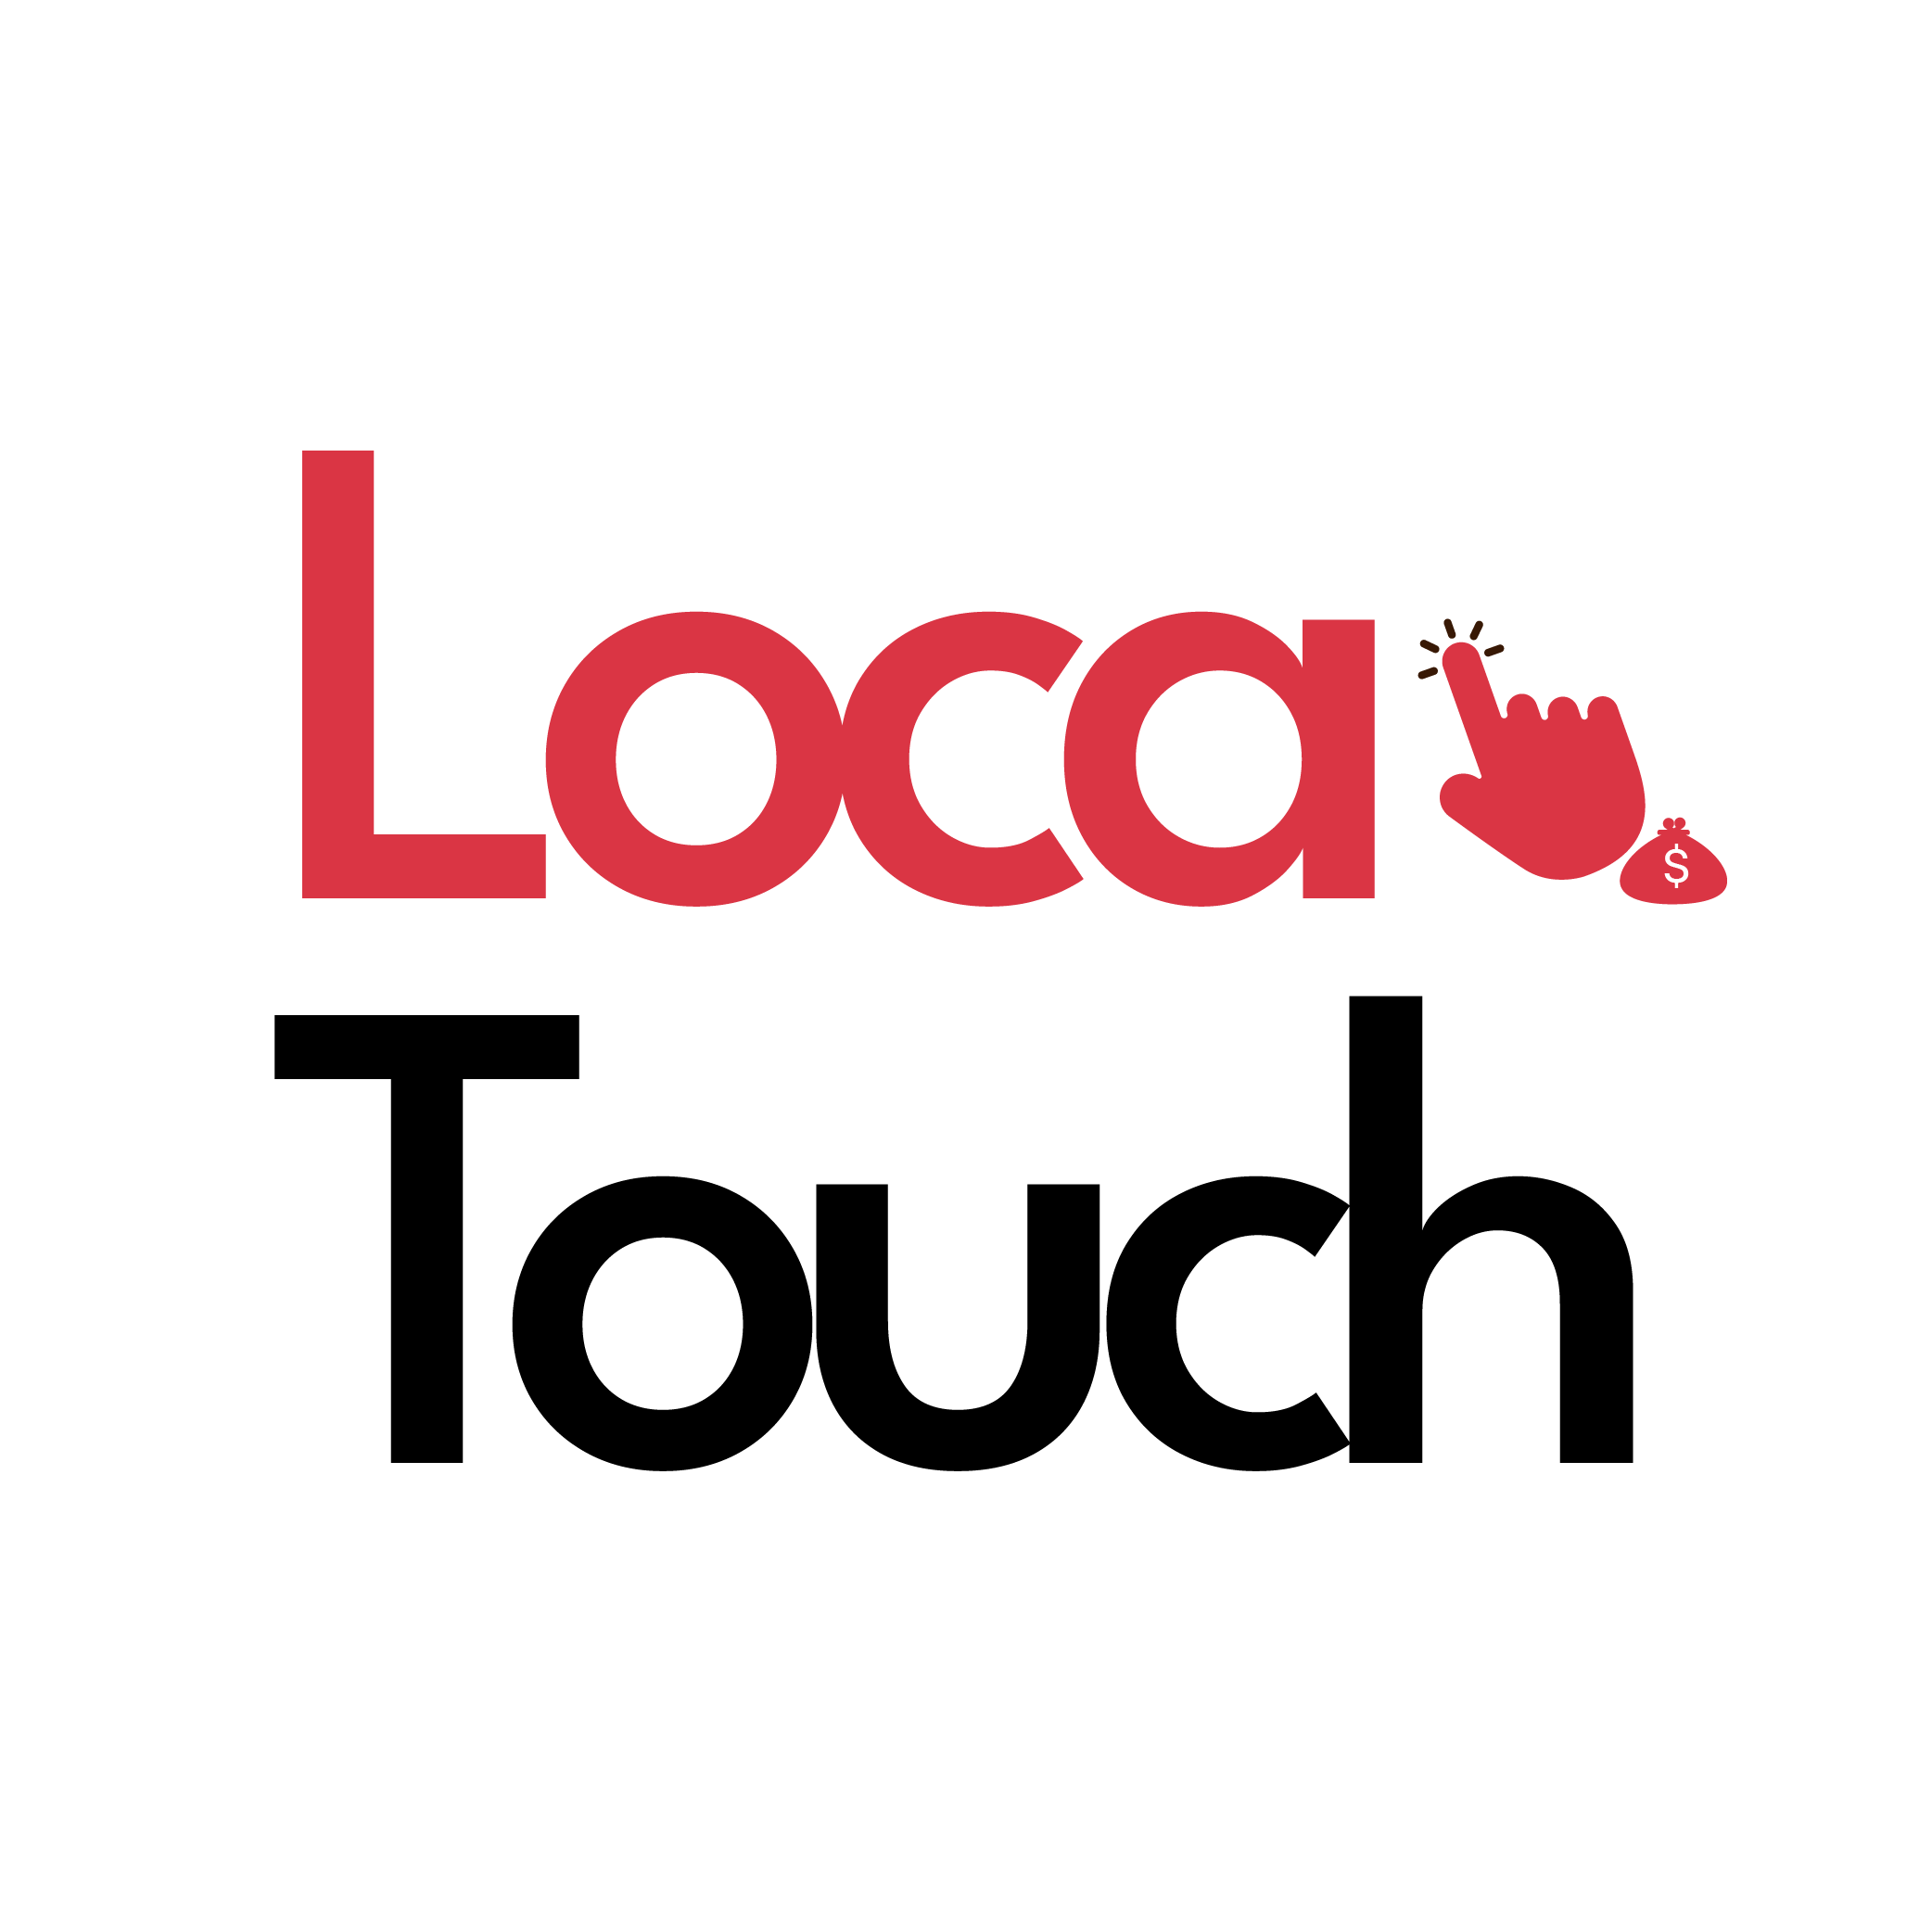 logo locatouch